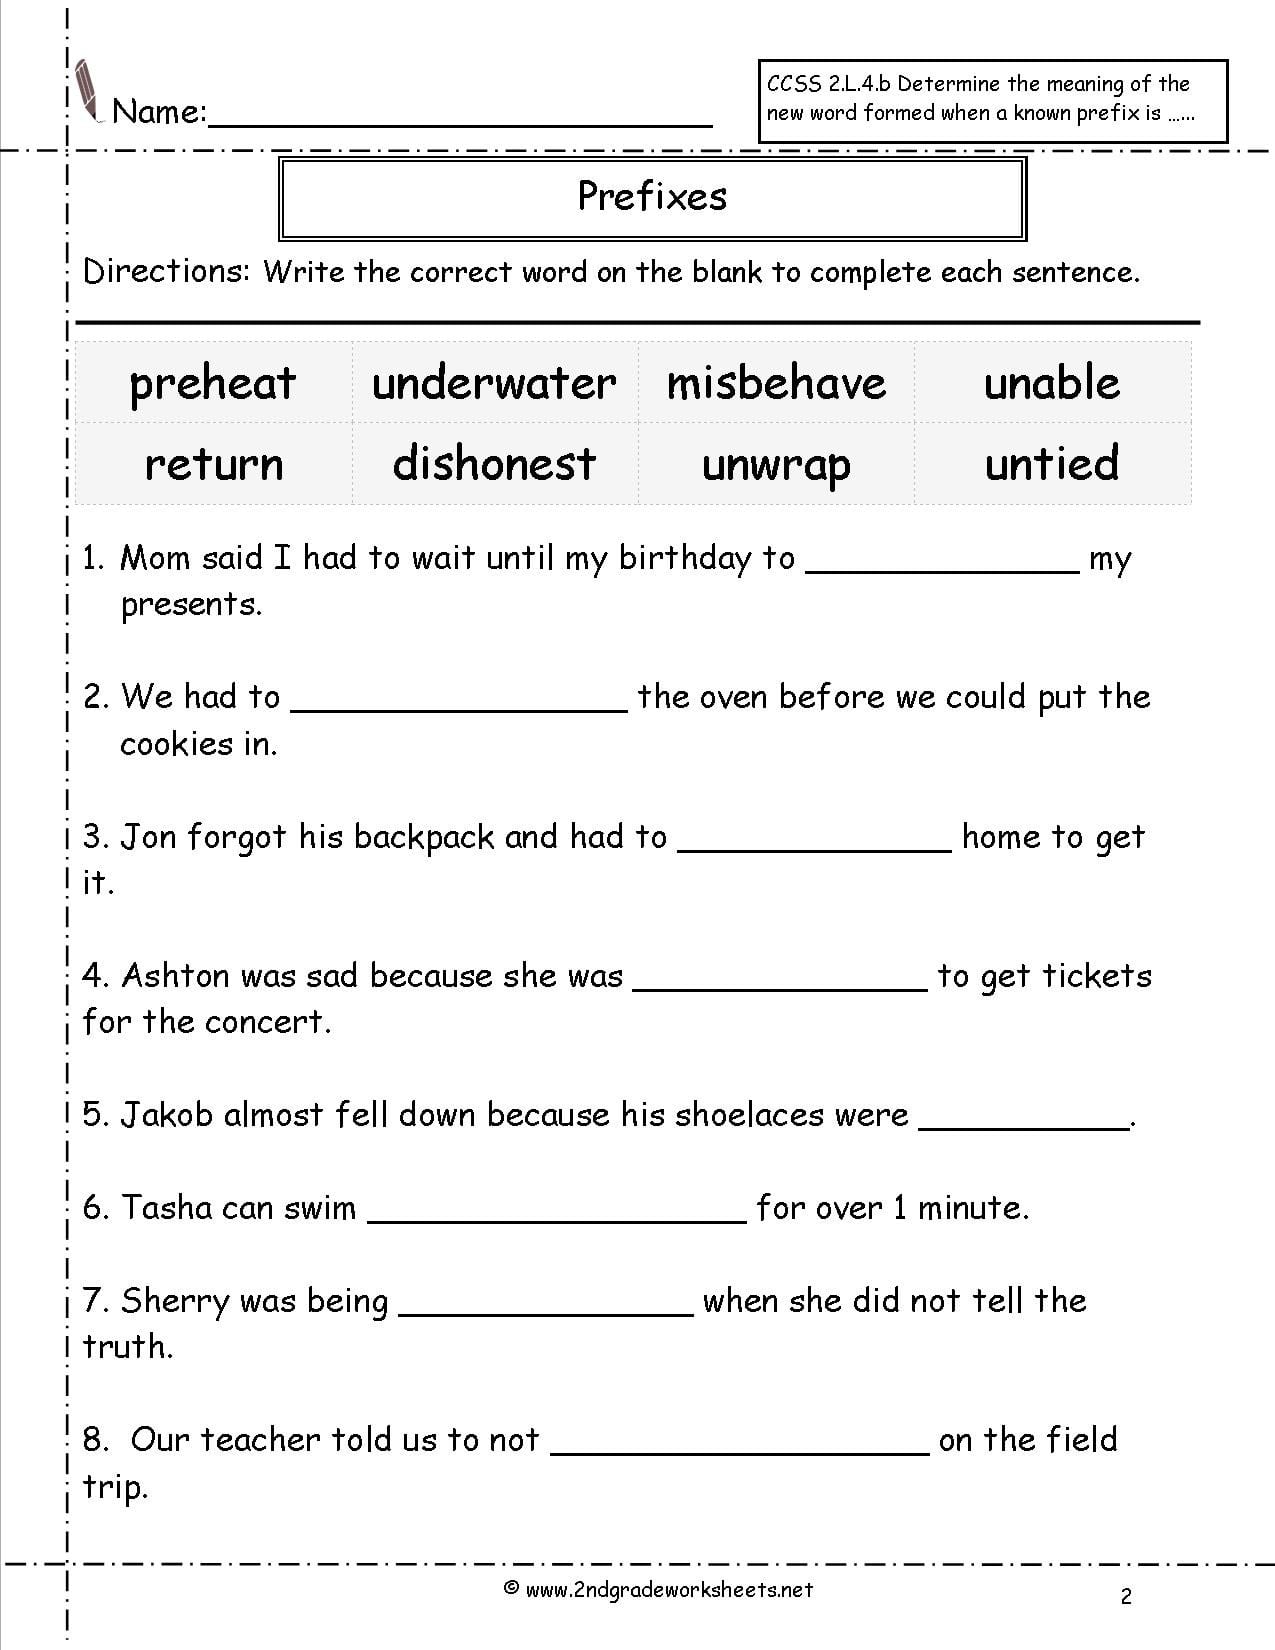 Second Grade Prefixes Worksheets — db-excel.com